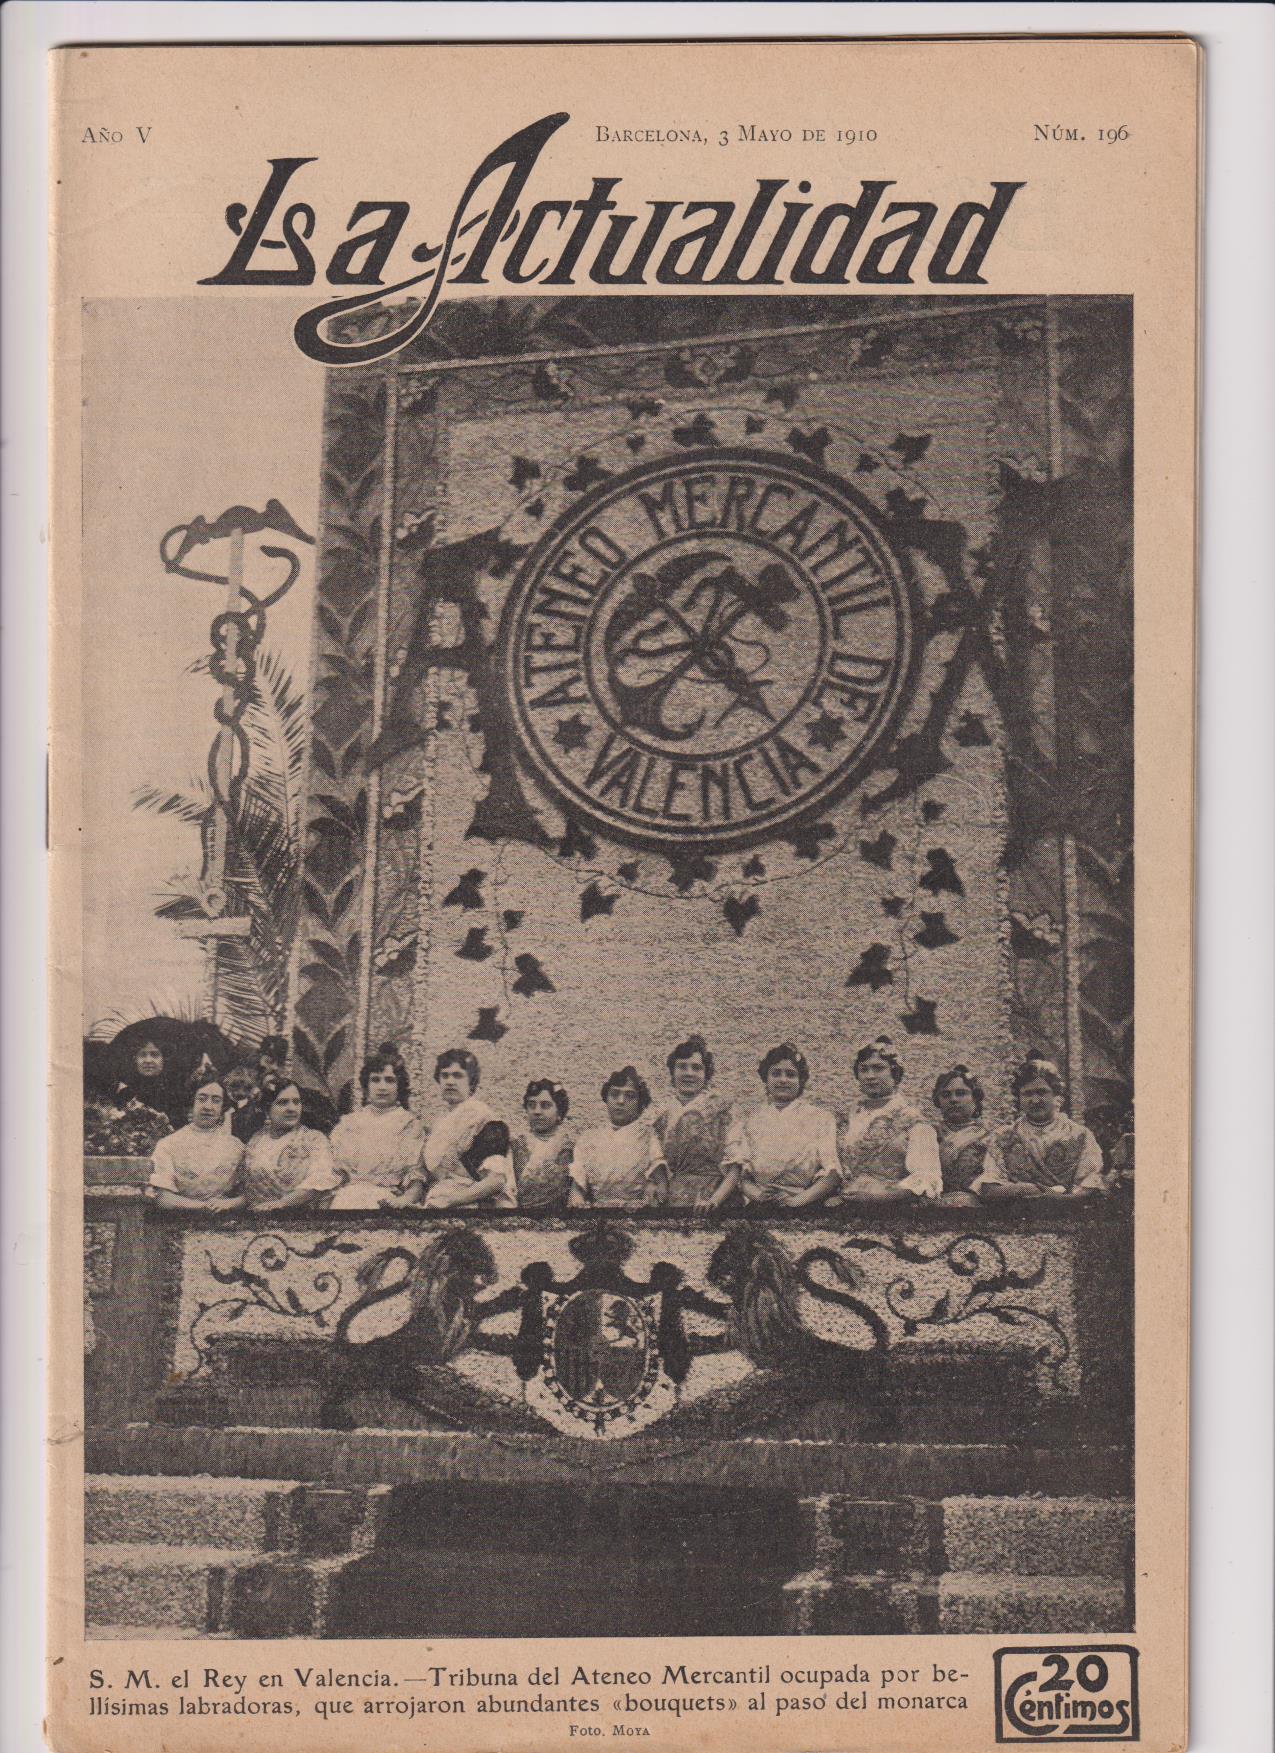 La Actualidad. Revista Mundial de Información Gráfica nº 196. Inauguración de la Exposición Nacional de Valencia. Barcelona 3 de Mayo de 1910